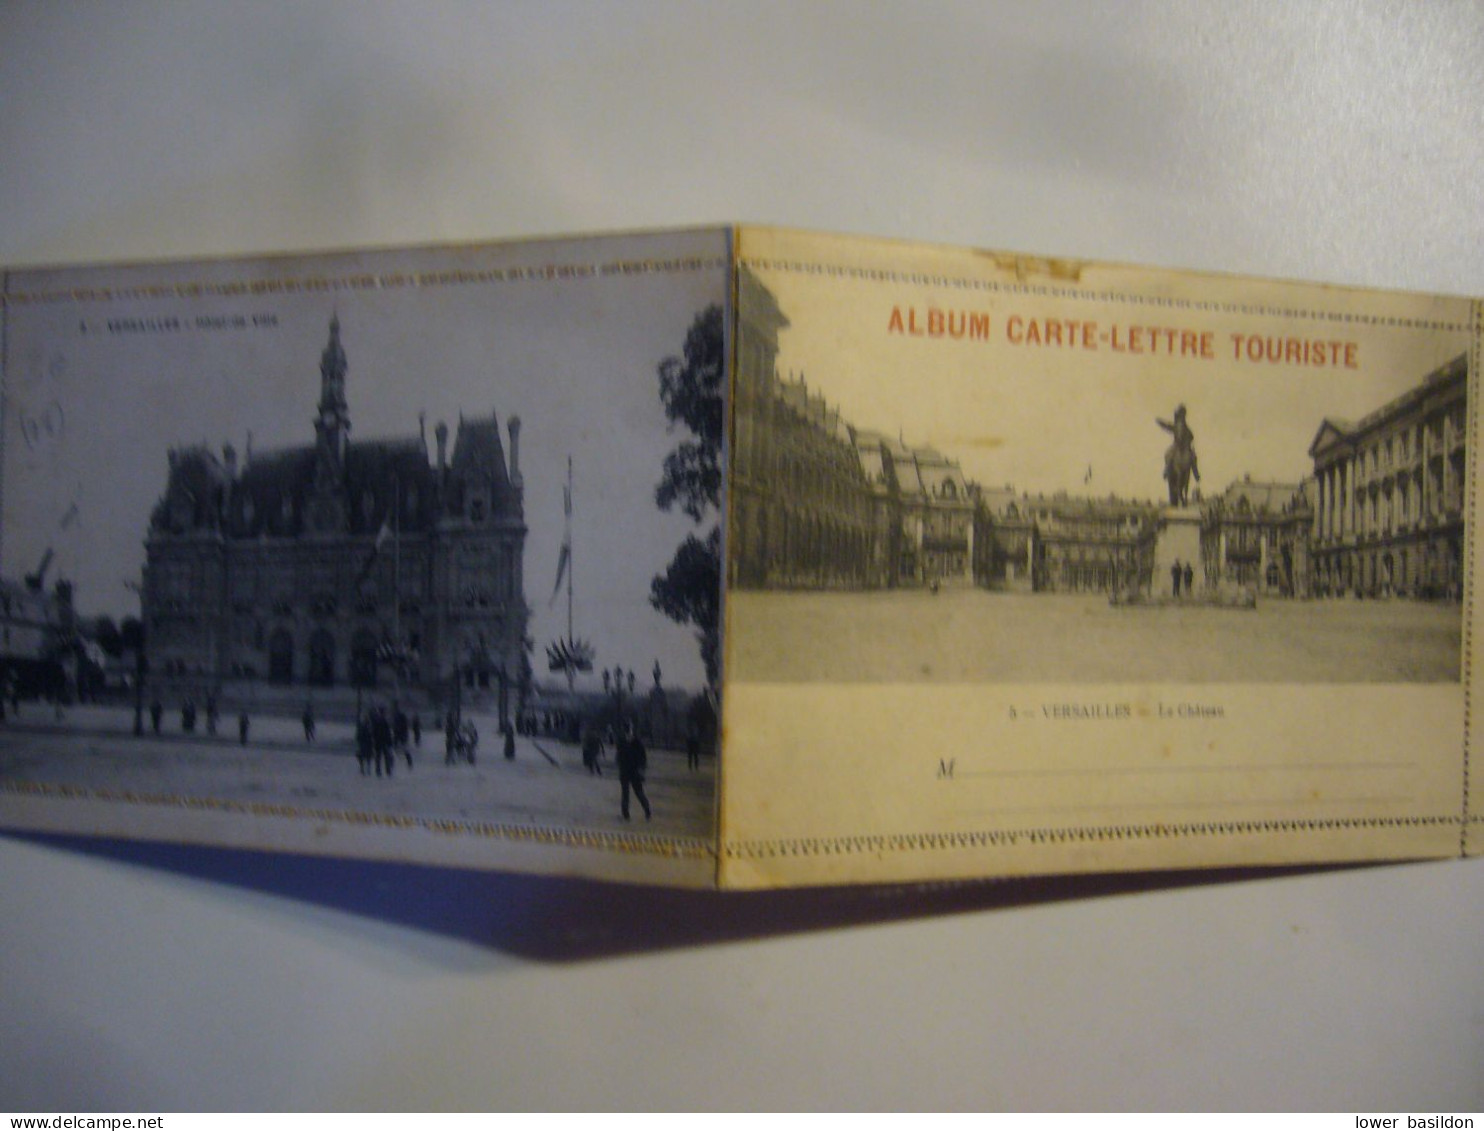 Album Carte-lettre - Versailles (Château)